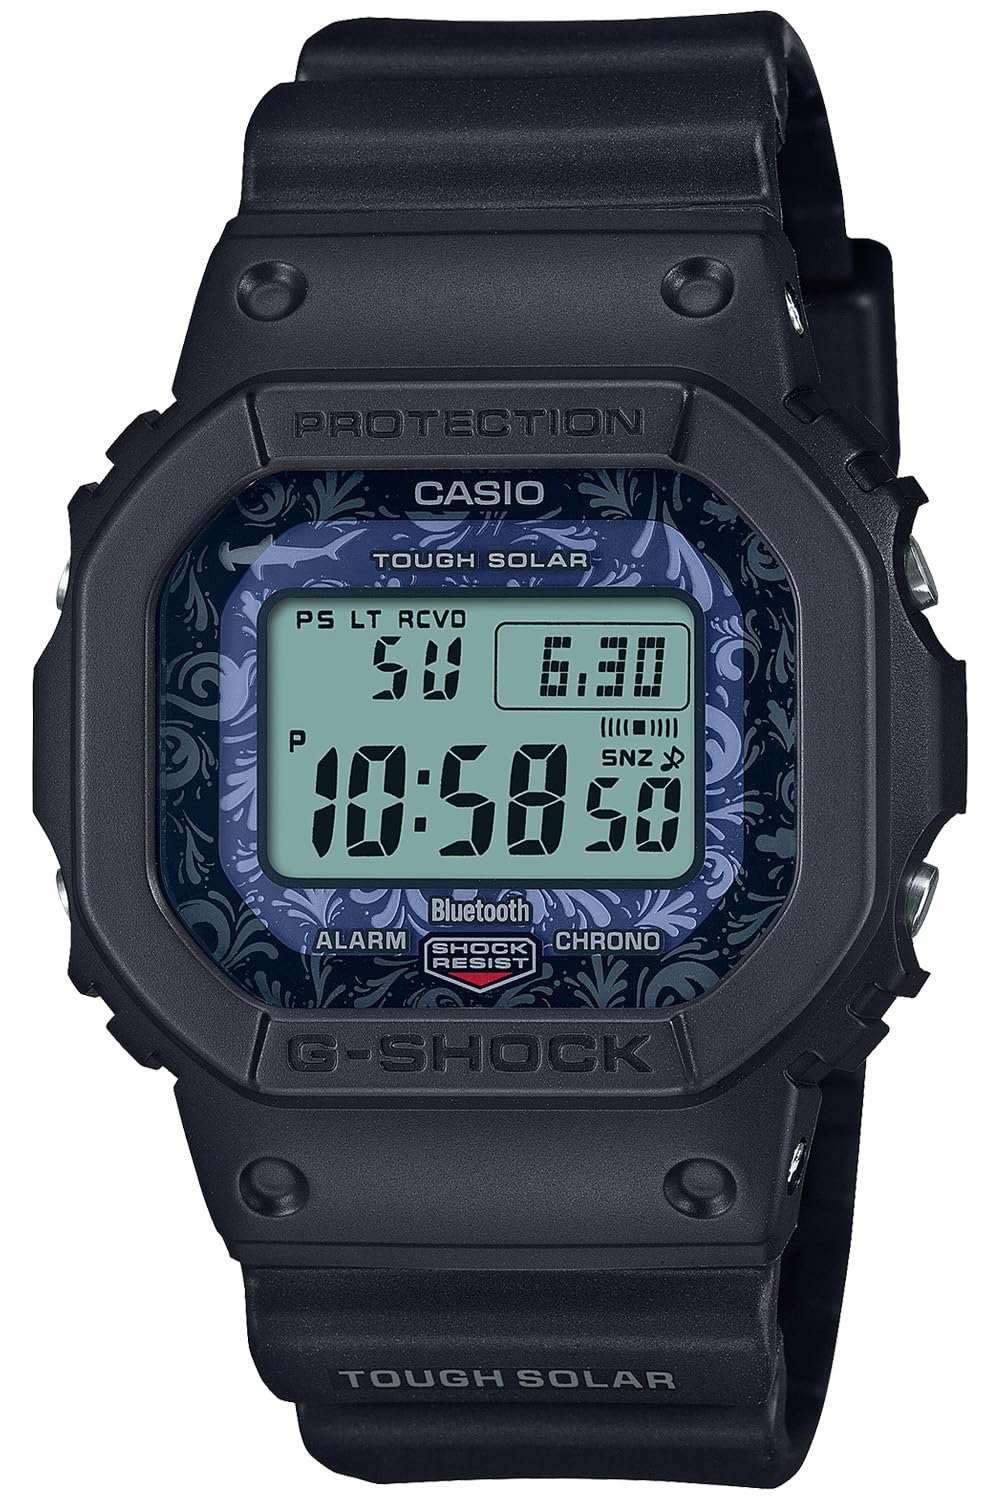 ジーショック [カシオ] 腕時計 【国内正規品】チャールズ・ダーウィン財団コラボレーションモデル Bluetooth搭載 バイオマスプラスチック採用 GW-B5600CD-1A2JR メンズ ブラック - BanzaiHobby